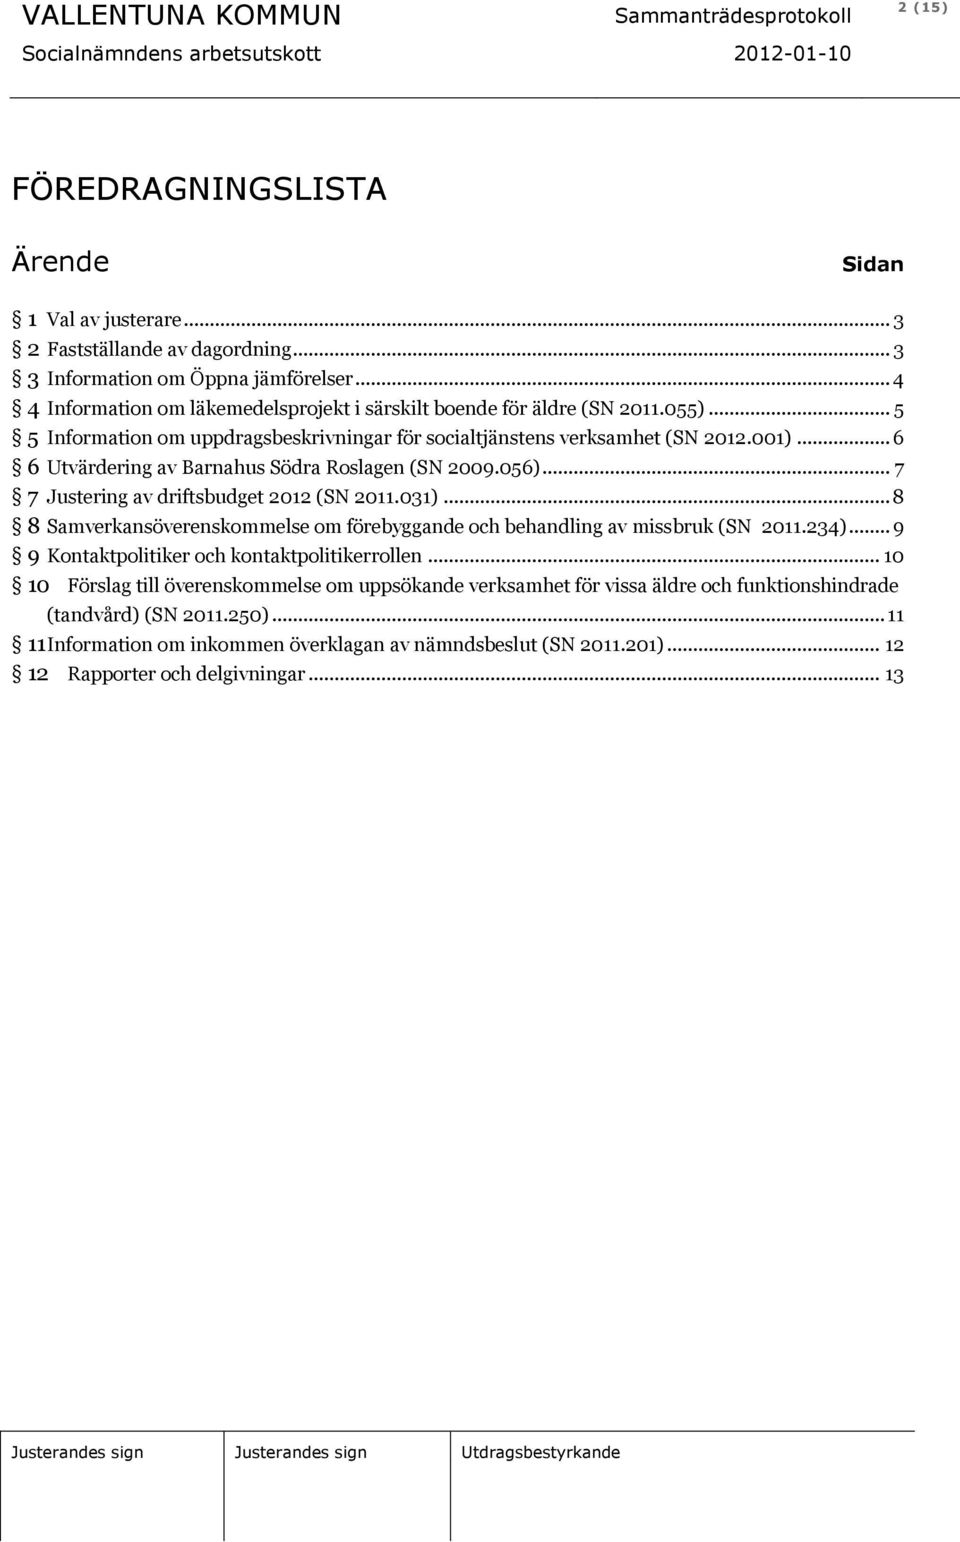 .. 6 6 Utvärdering av Barnahus Södra Roslagen (SN 2009.056)... 7 7 Justering av driftsbudget 2012 (SN 2011.031)... 8 8 Samverkansöverenskommelse om förebyggande och behandling av missbruk (SN 2011.